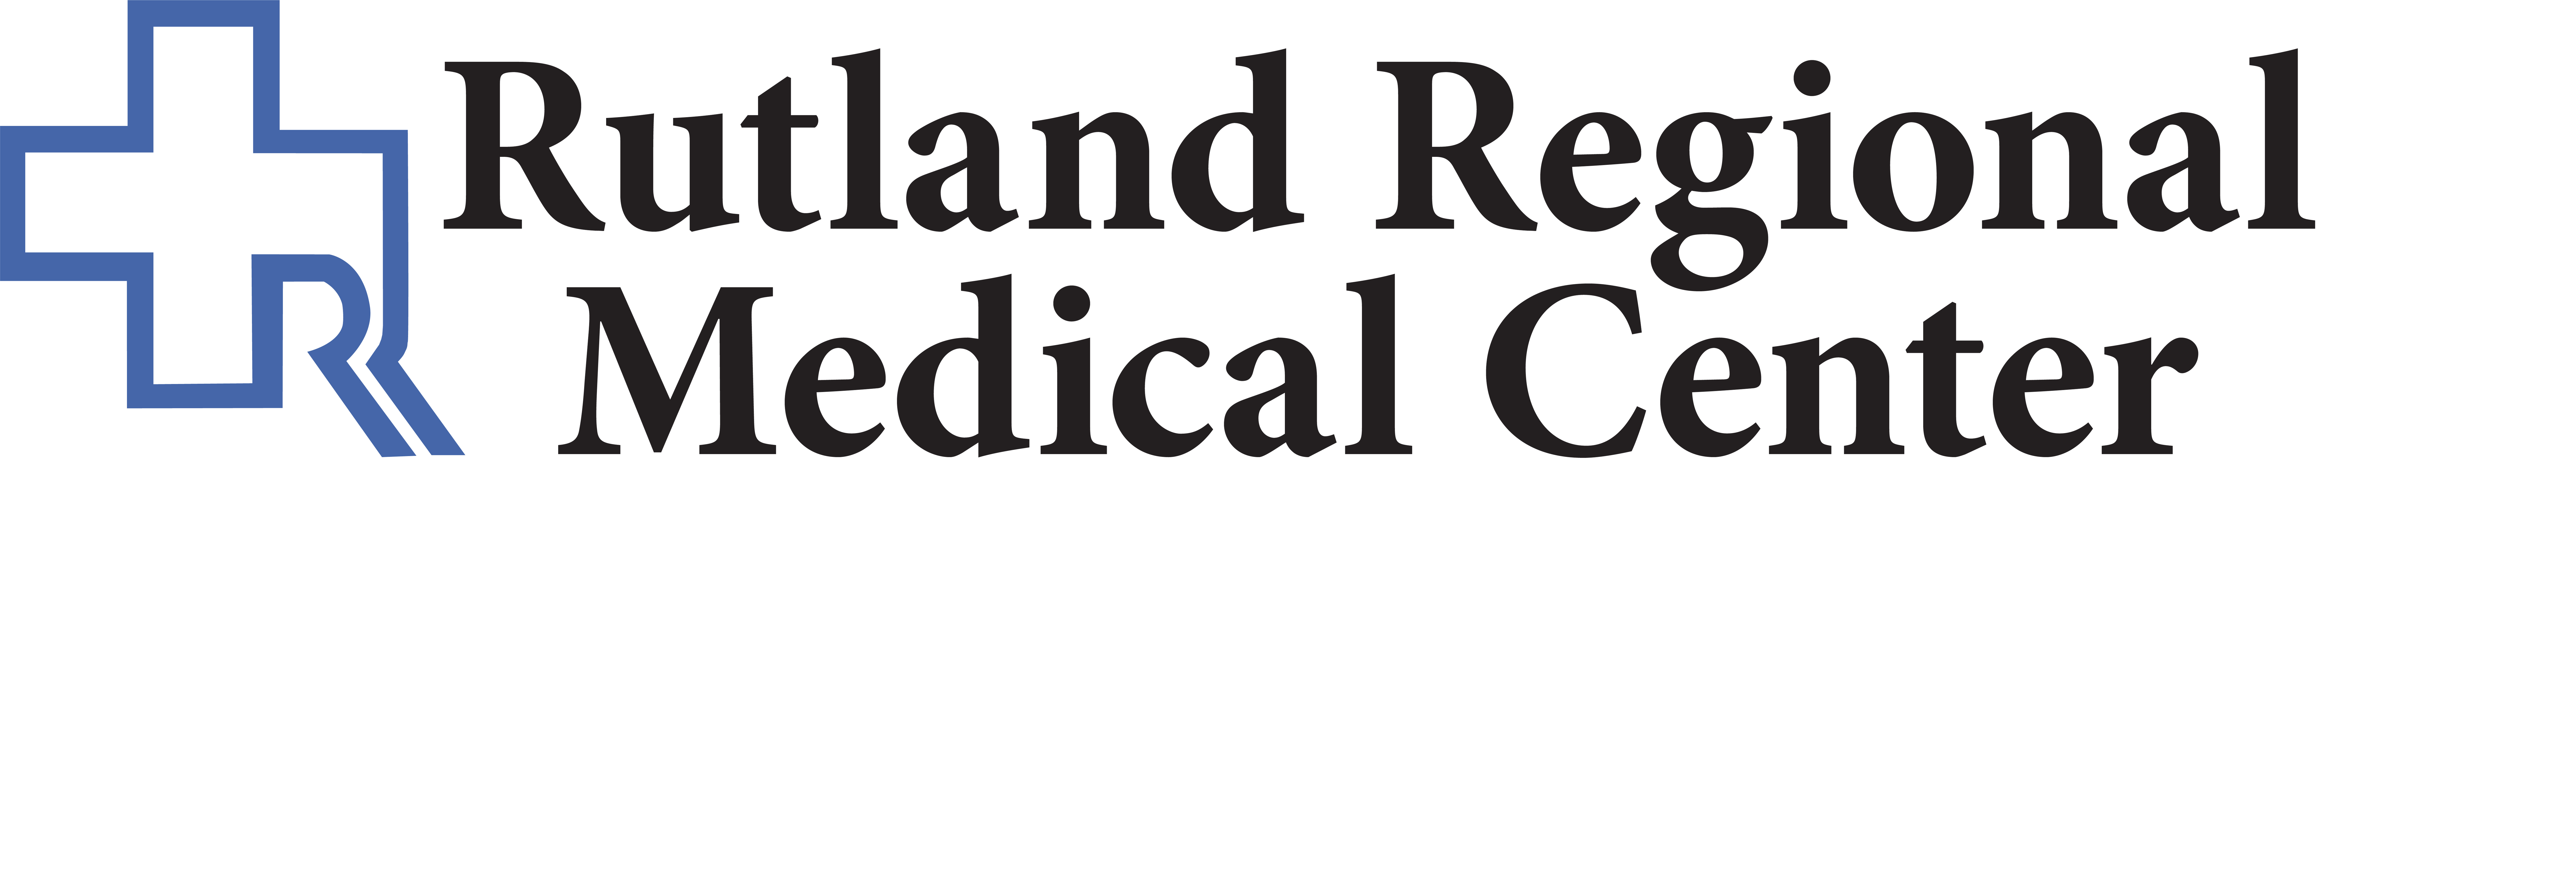 3. Rutland Regional Medical Center (Statewide Bronze)